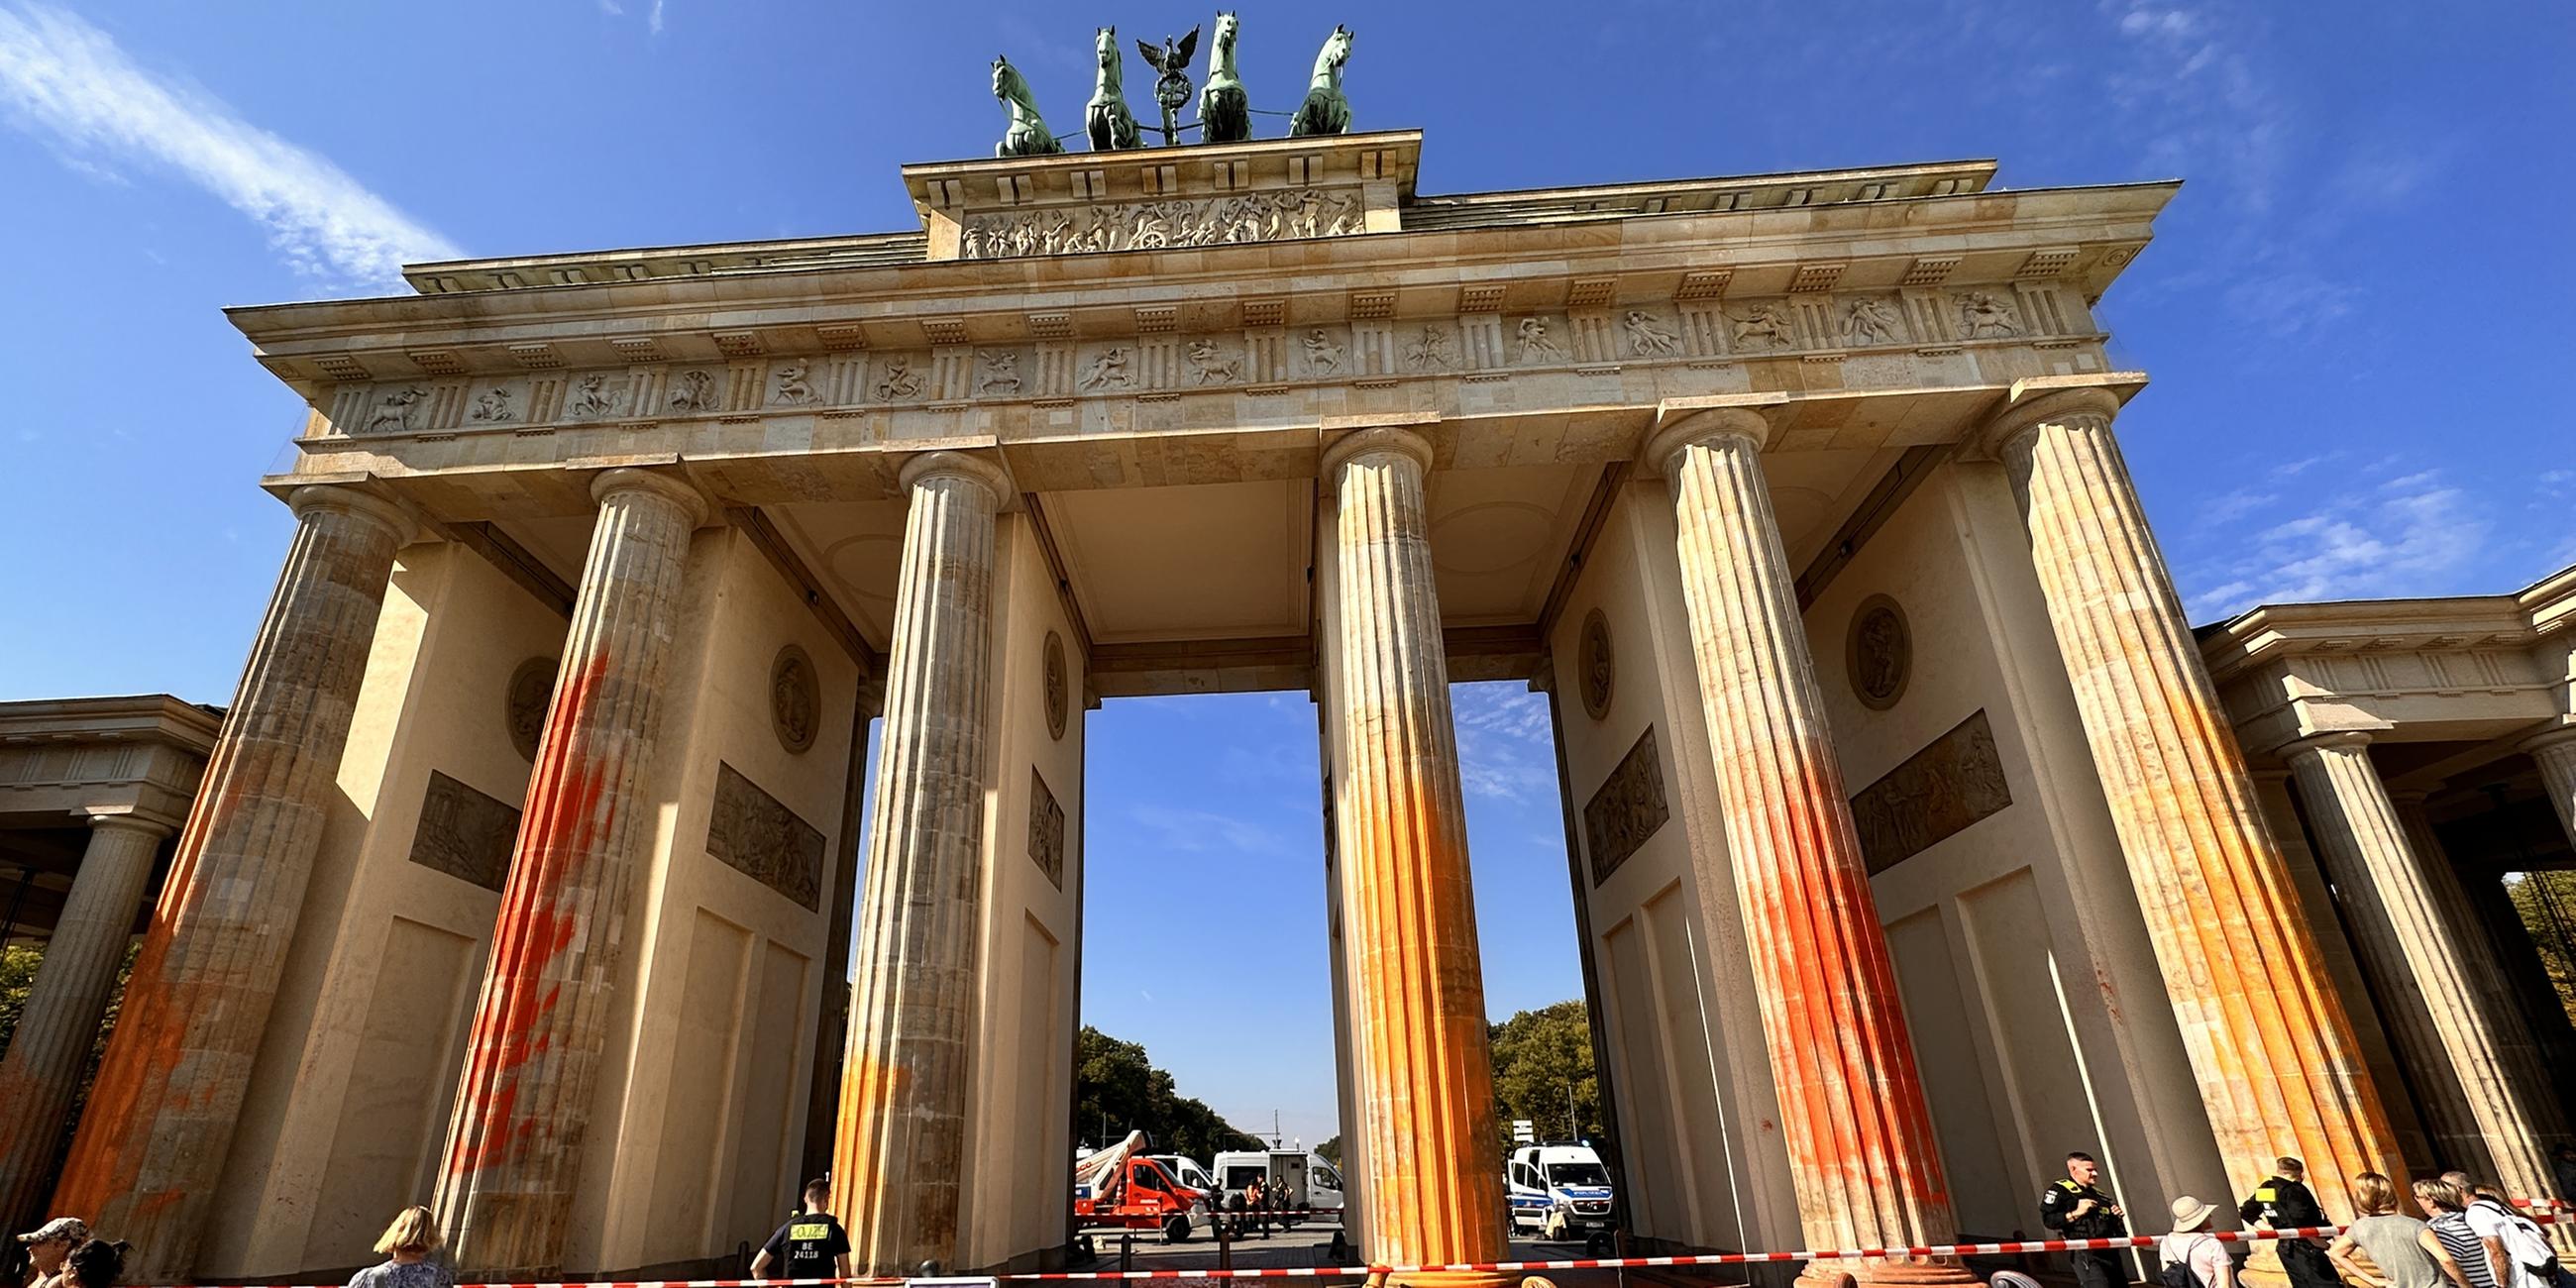  Mitglieder der Klimaschutzgruppe Letzte Generation haben das Brandenburger Tor in Berlin mit oranger Farbe angesprüht. 